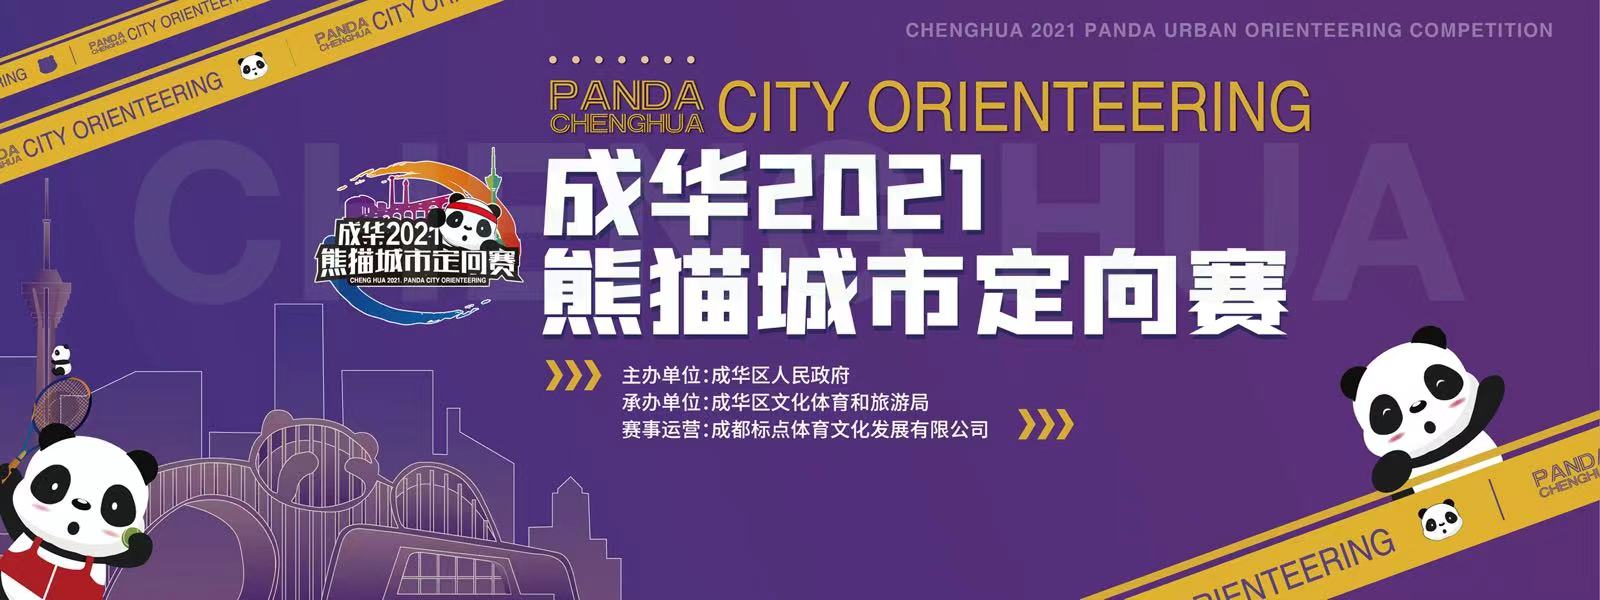 成华2021熊猫城市定向赛